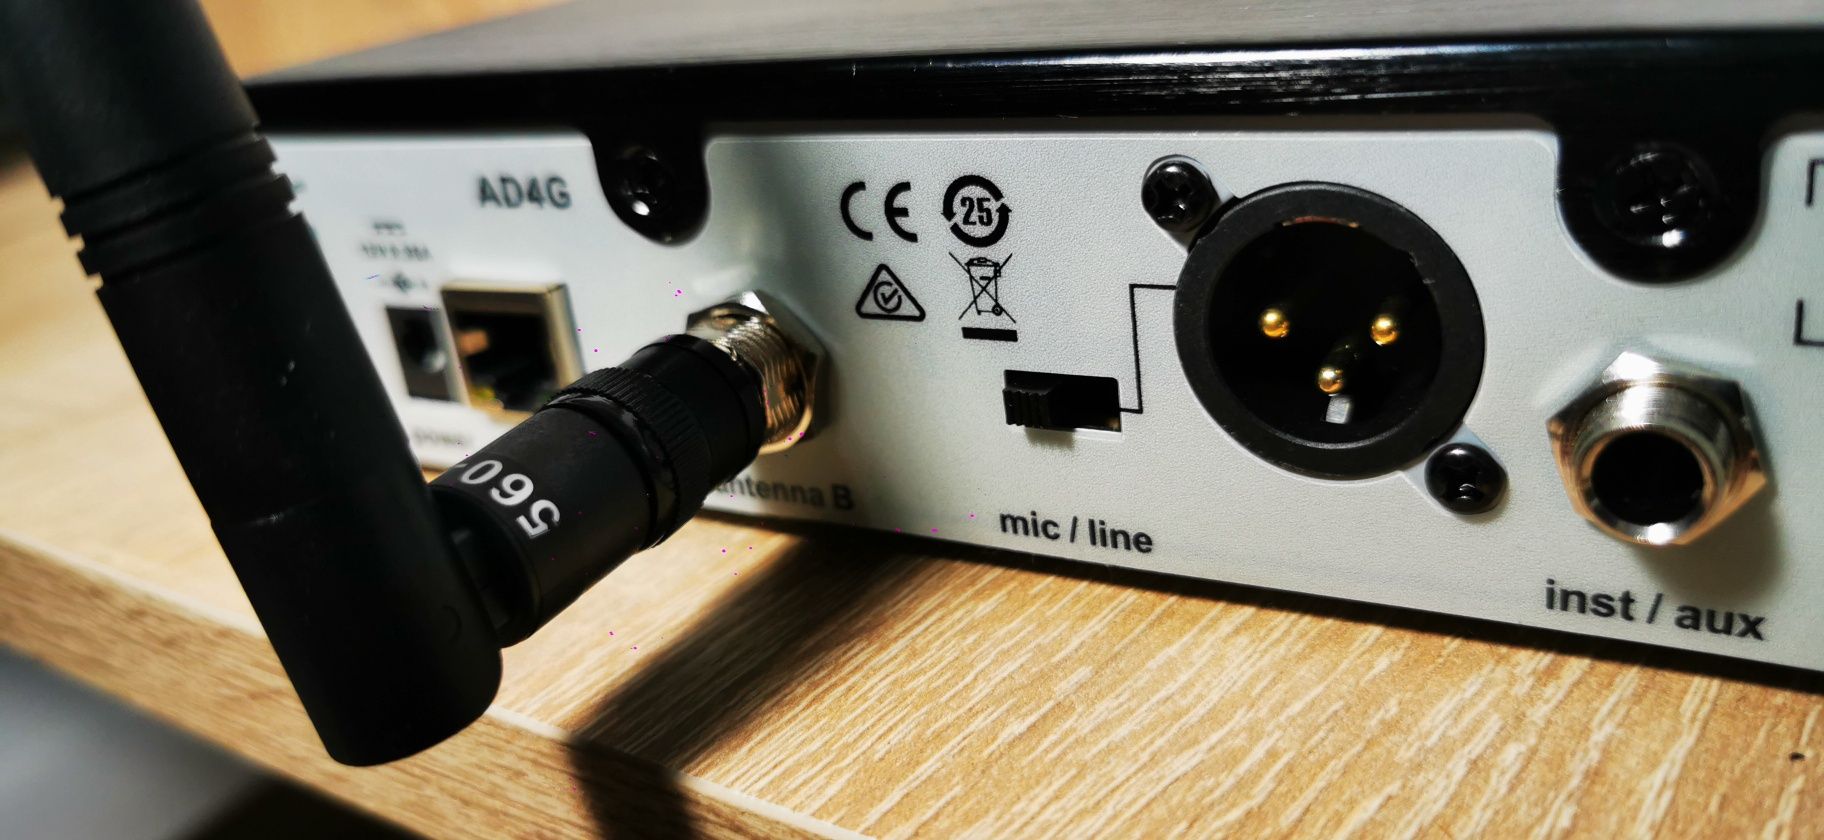 Profesjonalny Mikrofon bezprzewodowy SHURE B58 odbiornik AD4G dla DJa